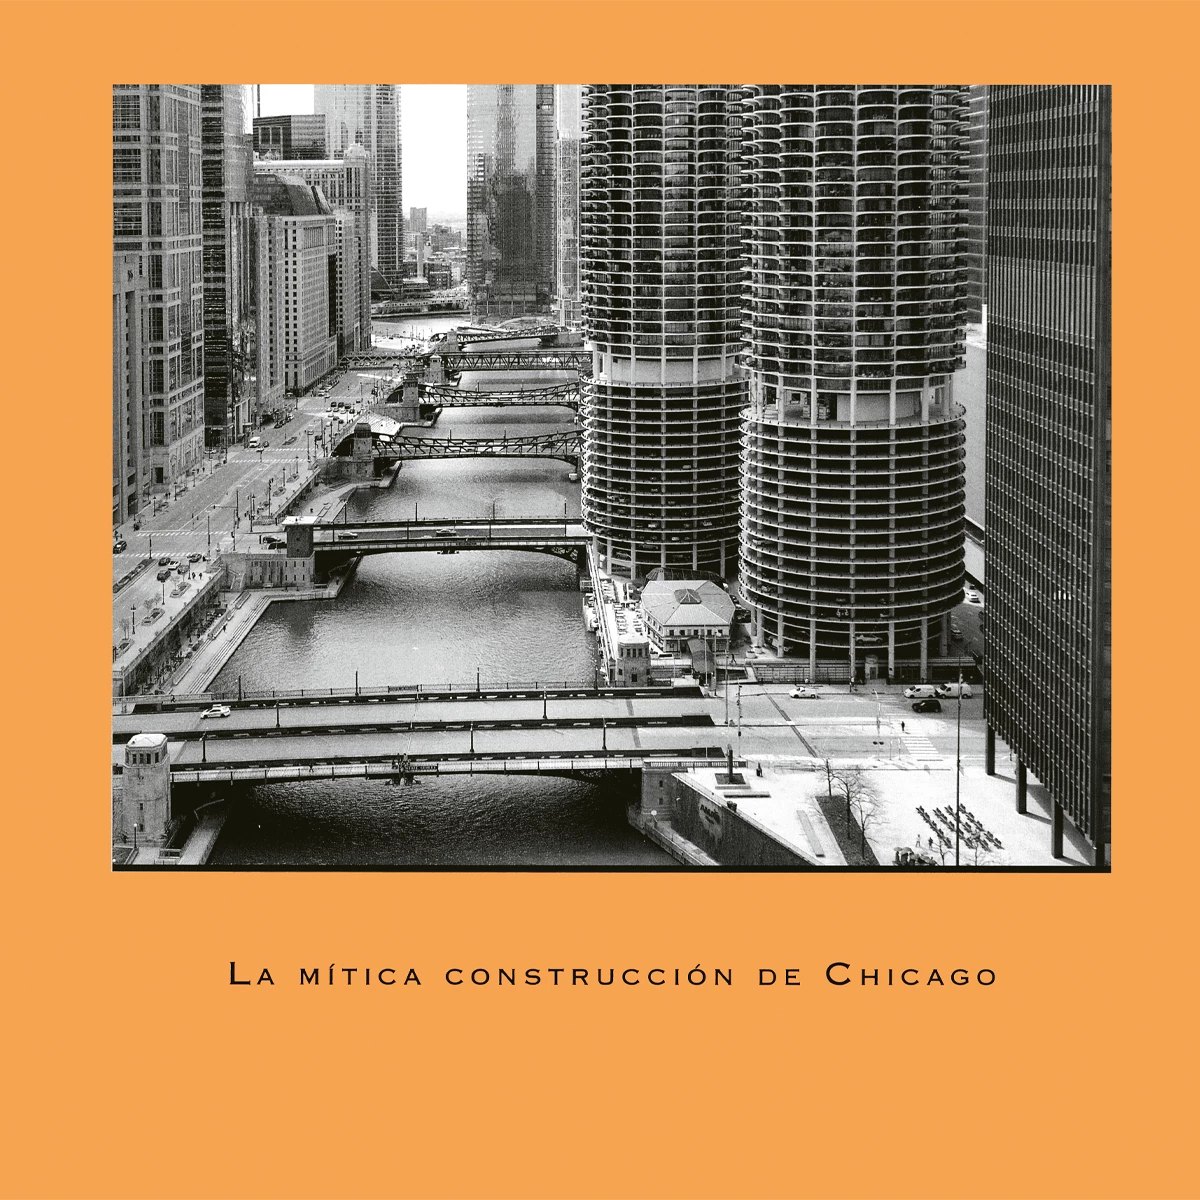 La mítica construcción de Chicago